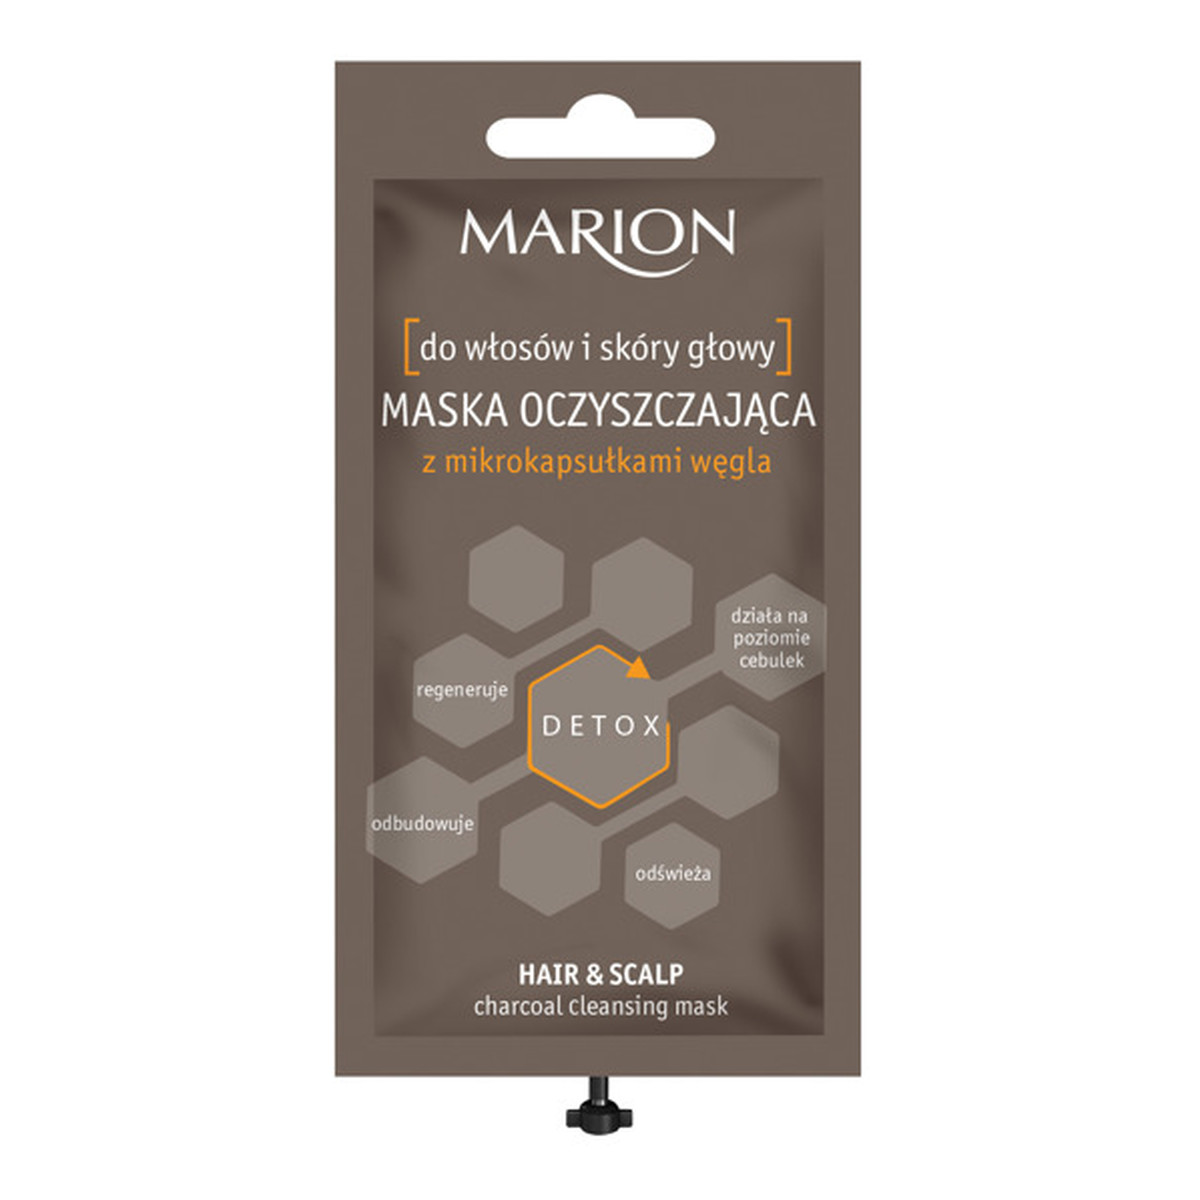 Marion Detox Maska oczyszczająca do włosów i skóry głowy 15g